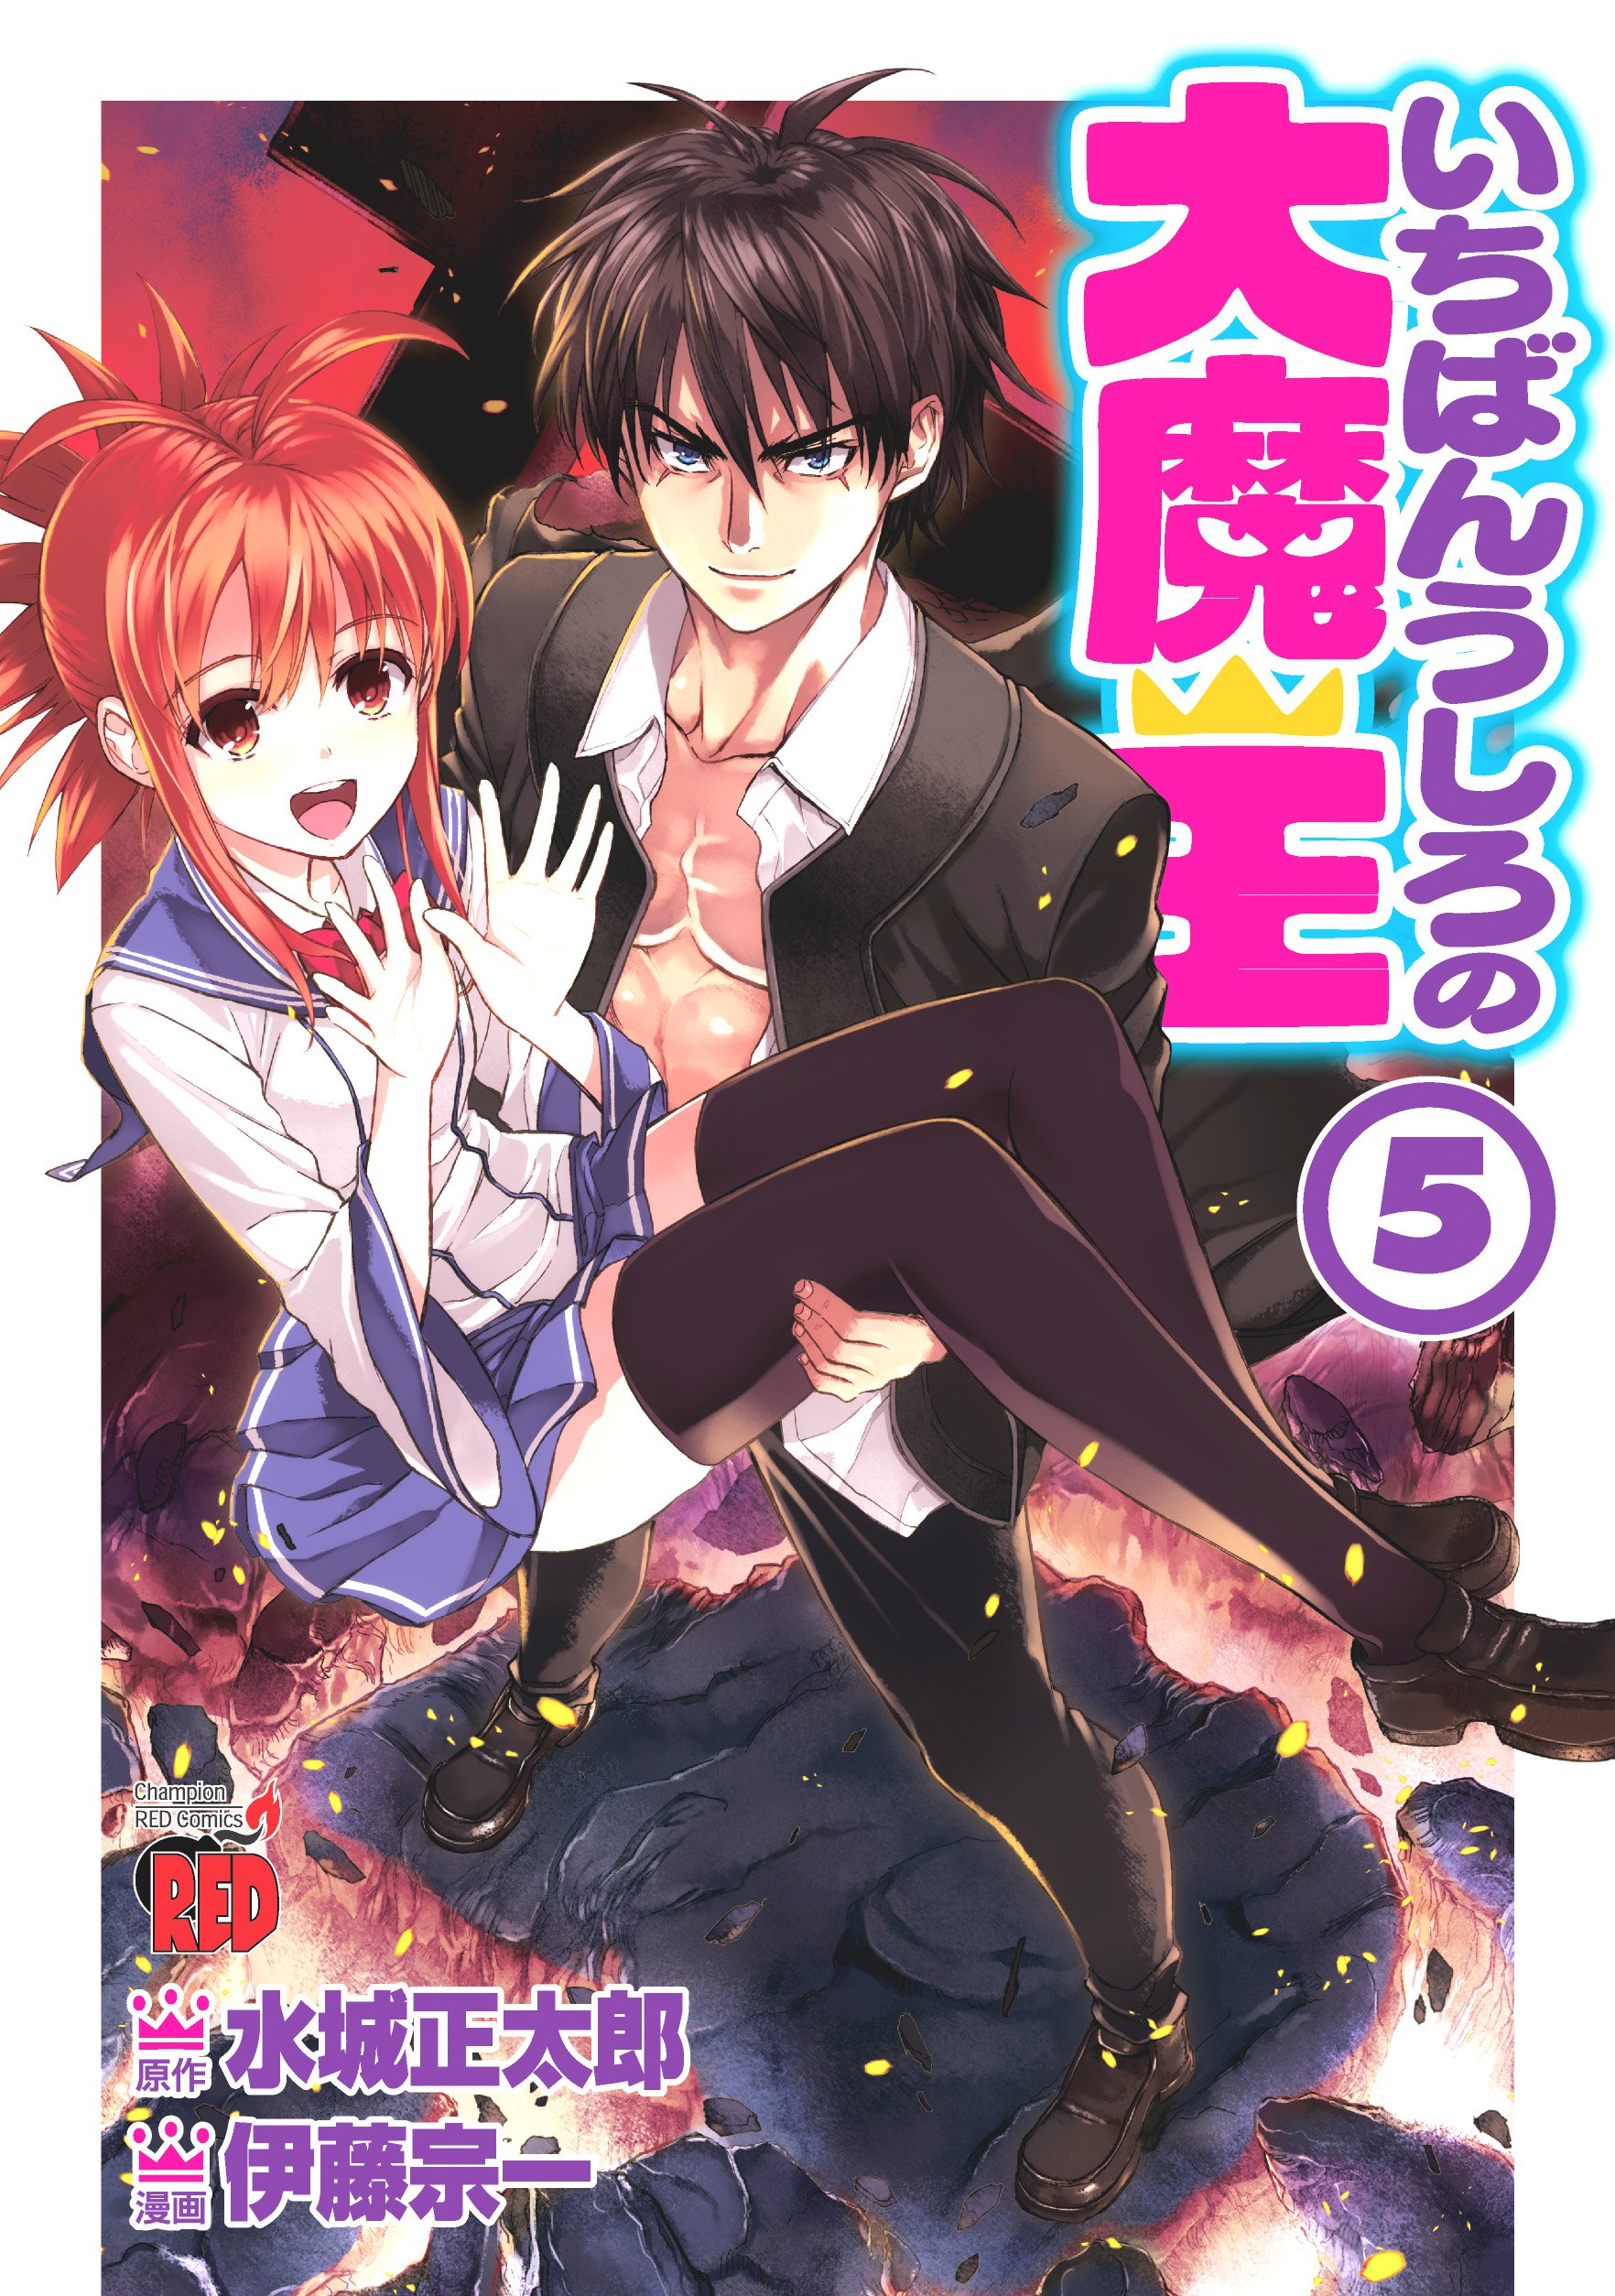 JAPAN manga: Demon King Daimao / Ichiban Ushiro no Dai Maou vol.1